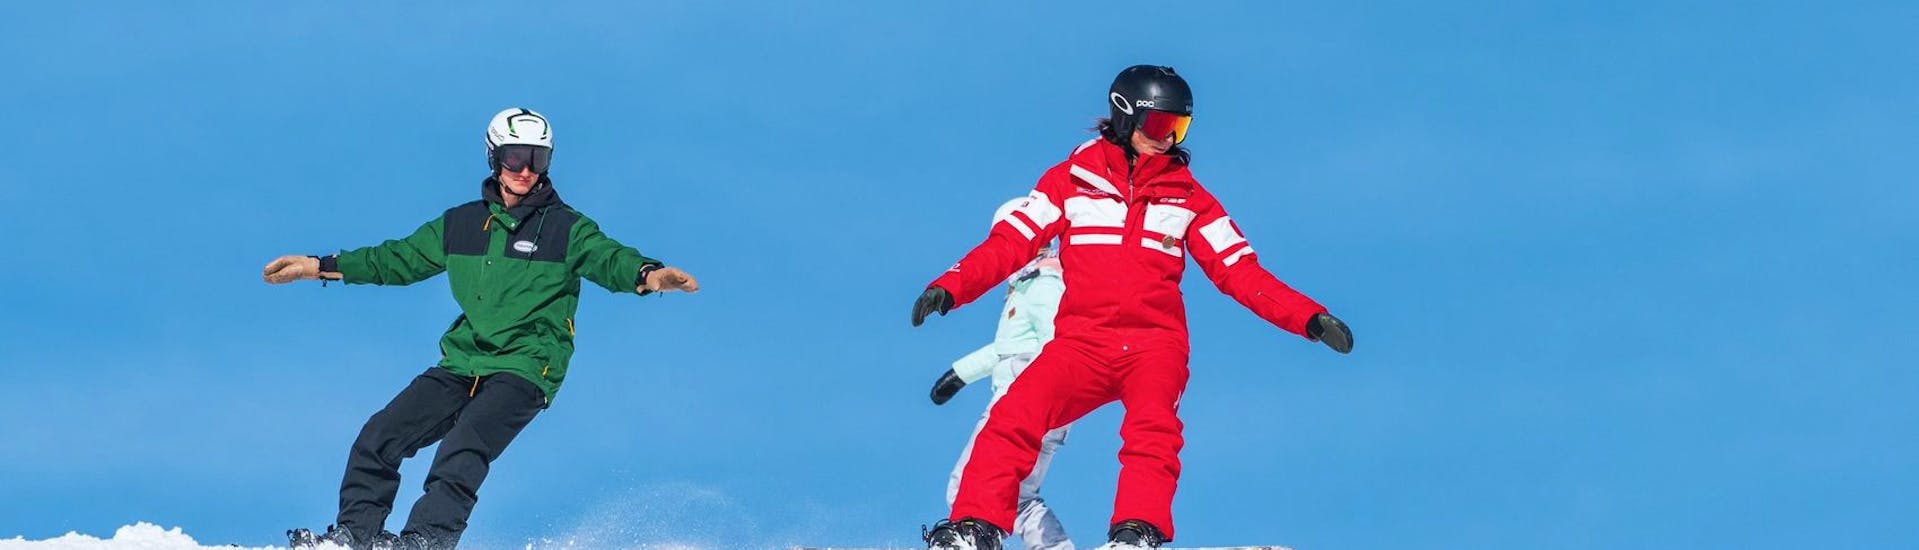 Des snowboardeurs reproduisent les bons gestes pendant un Cours particulier de snowboard pour Tous niveaux avec ESF La Tania.